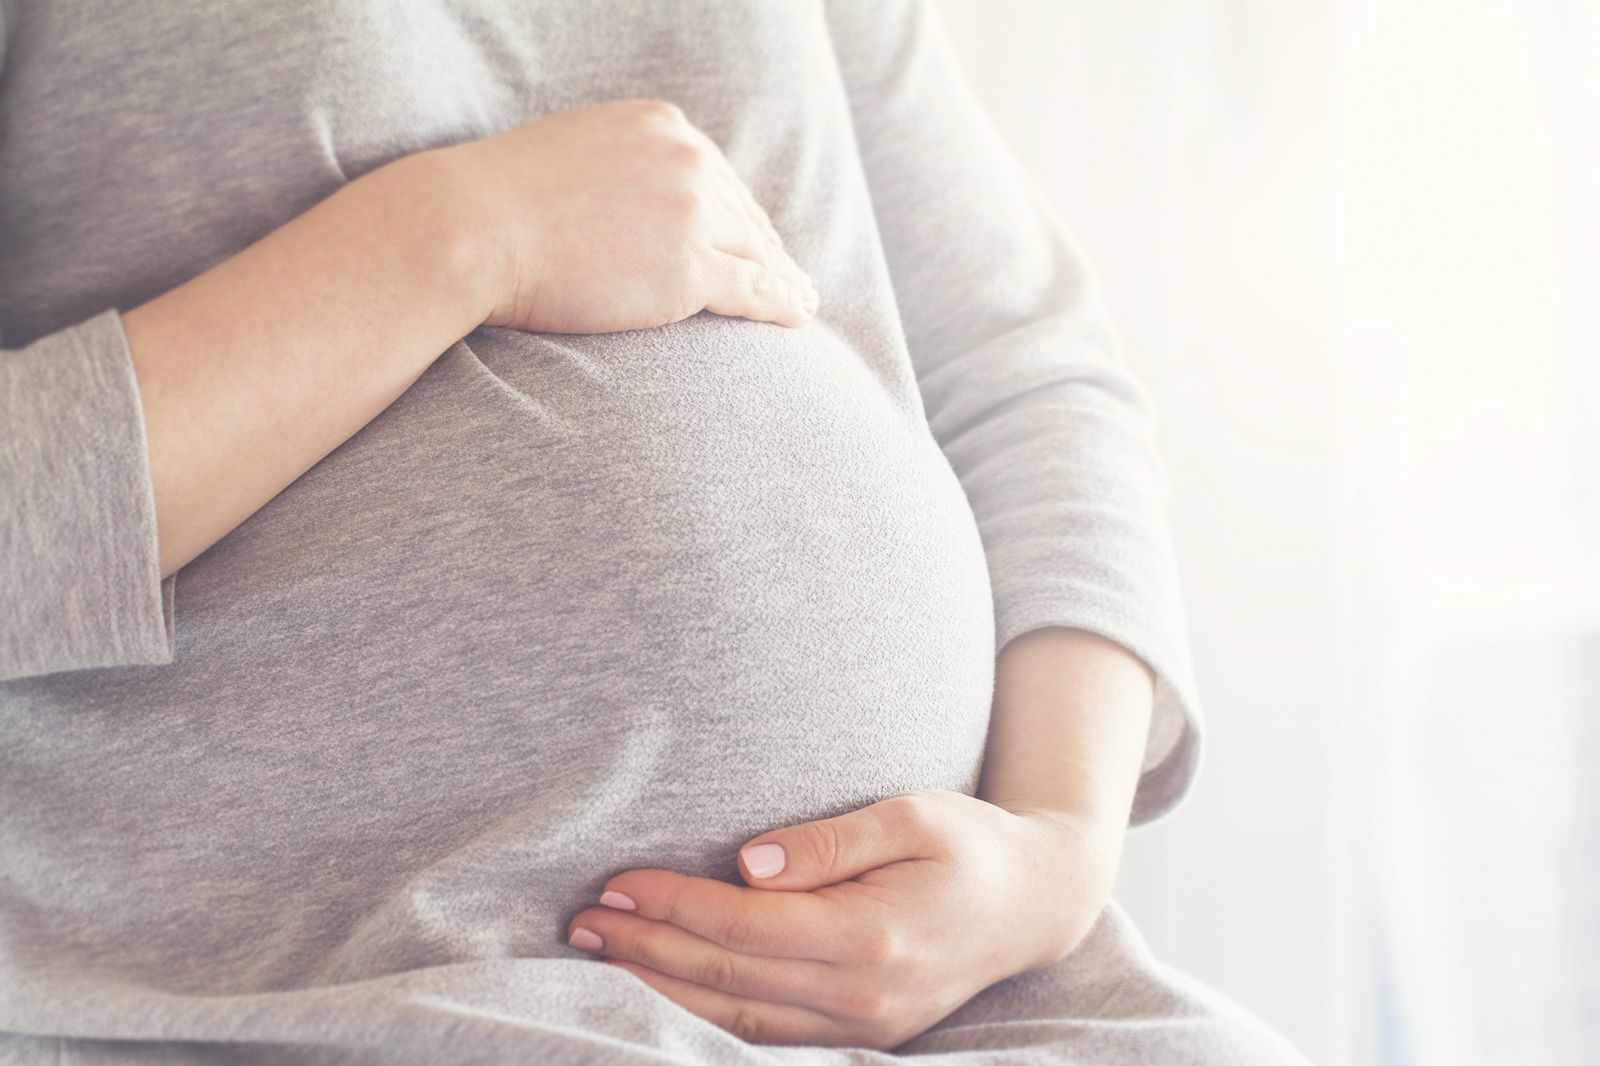 Εγκυμοσύνη και Χρόνια Νεφρική Νόσος